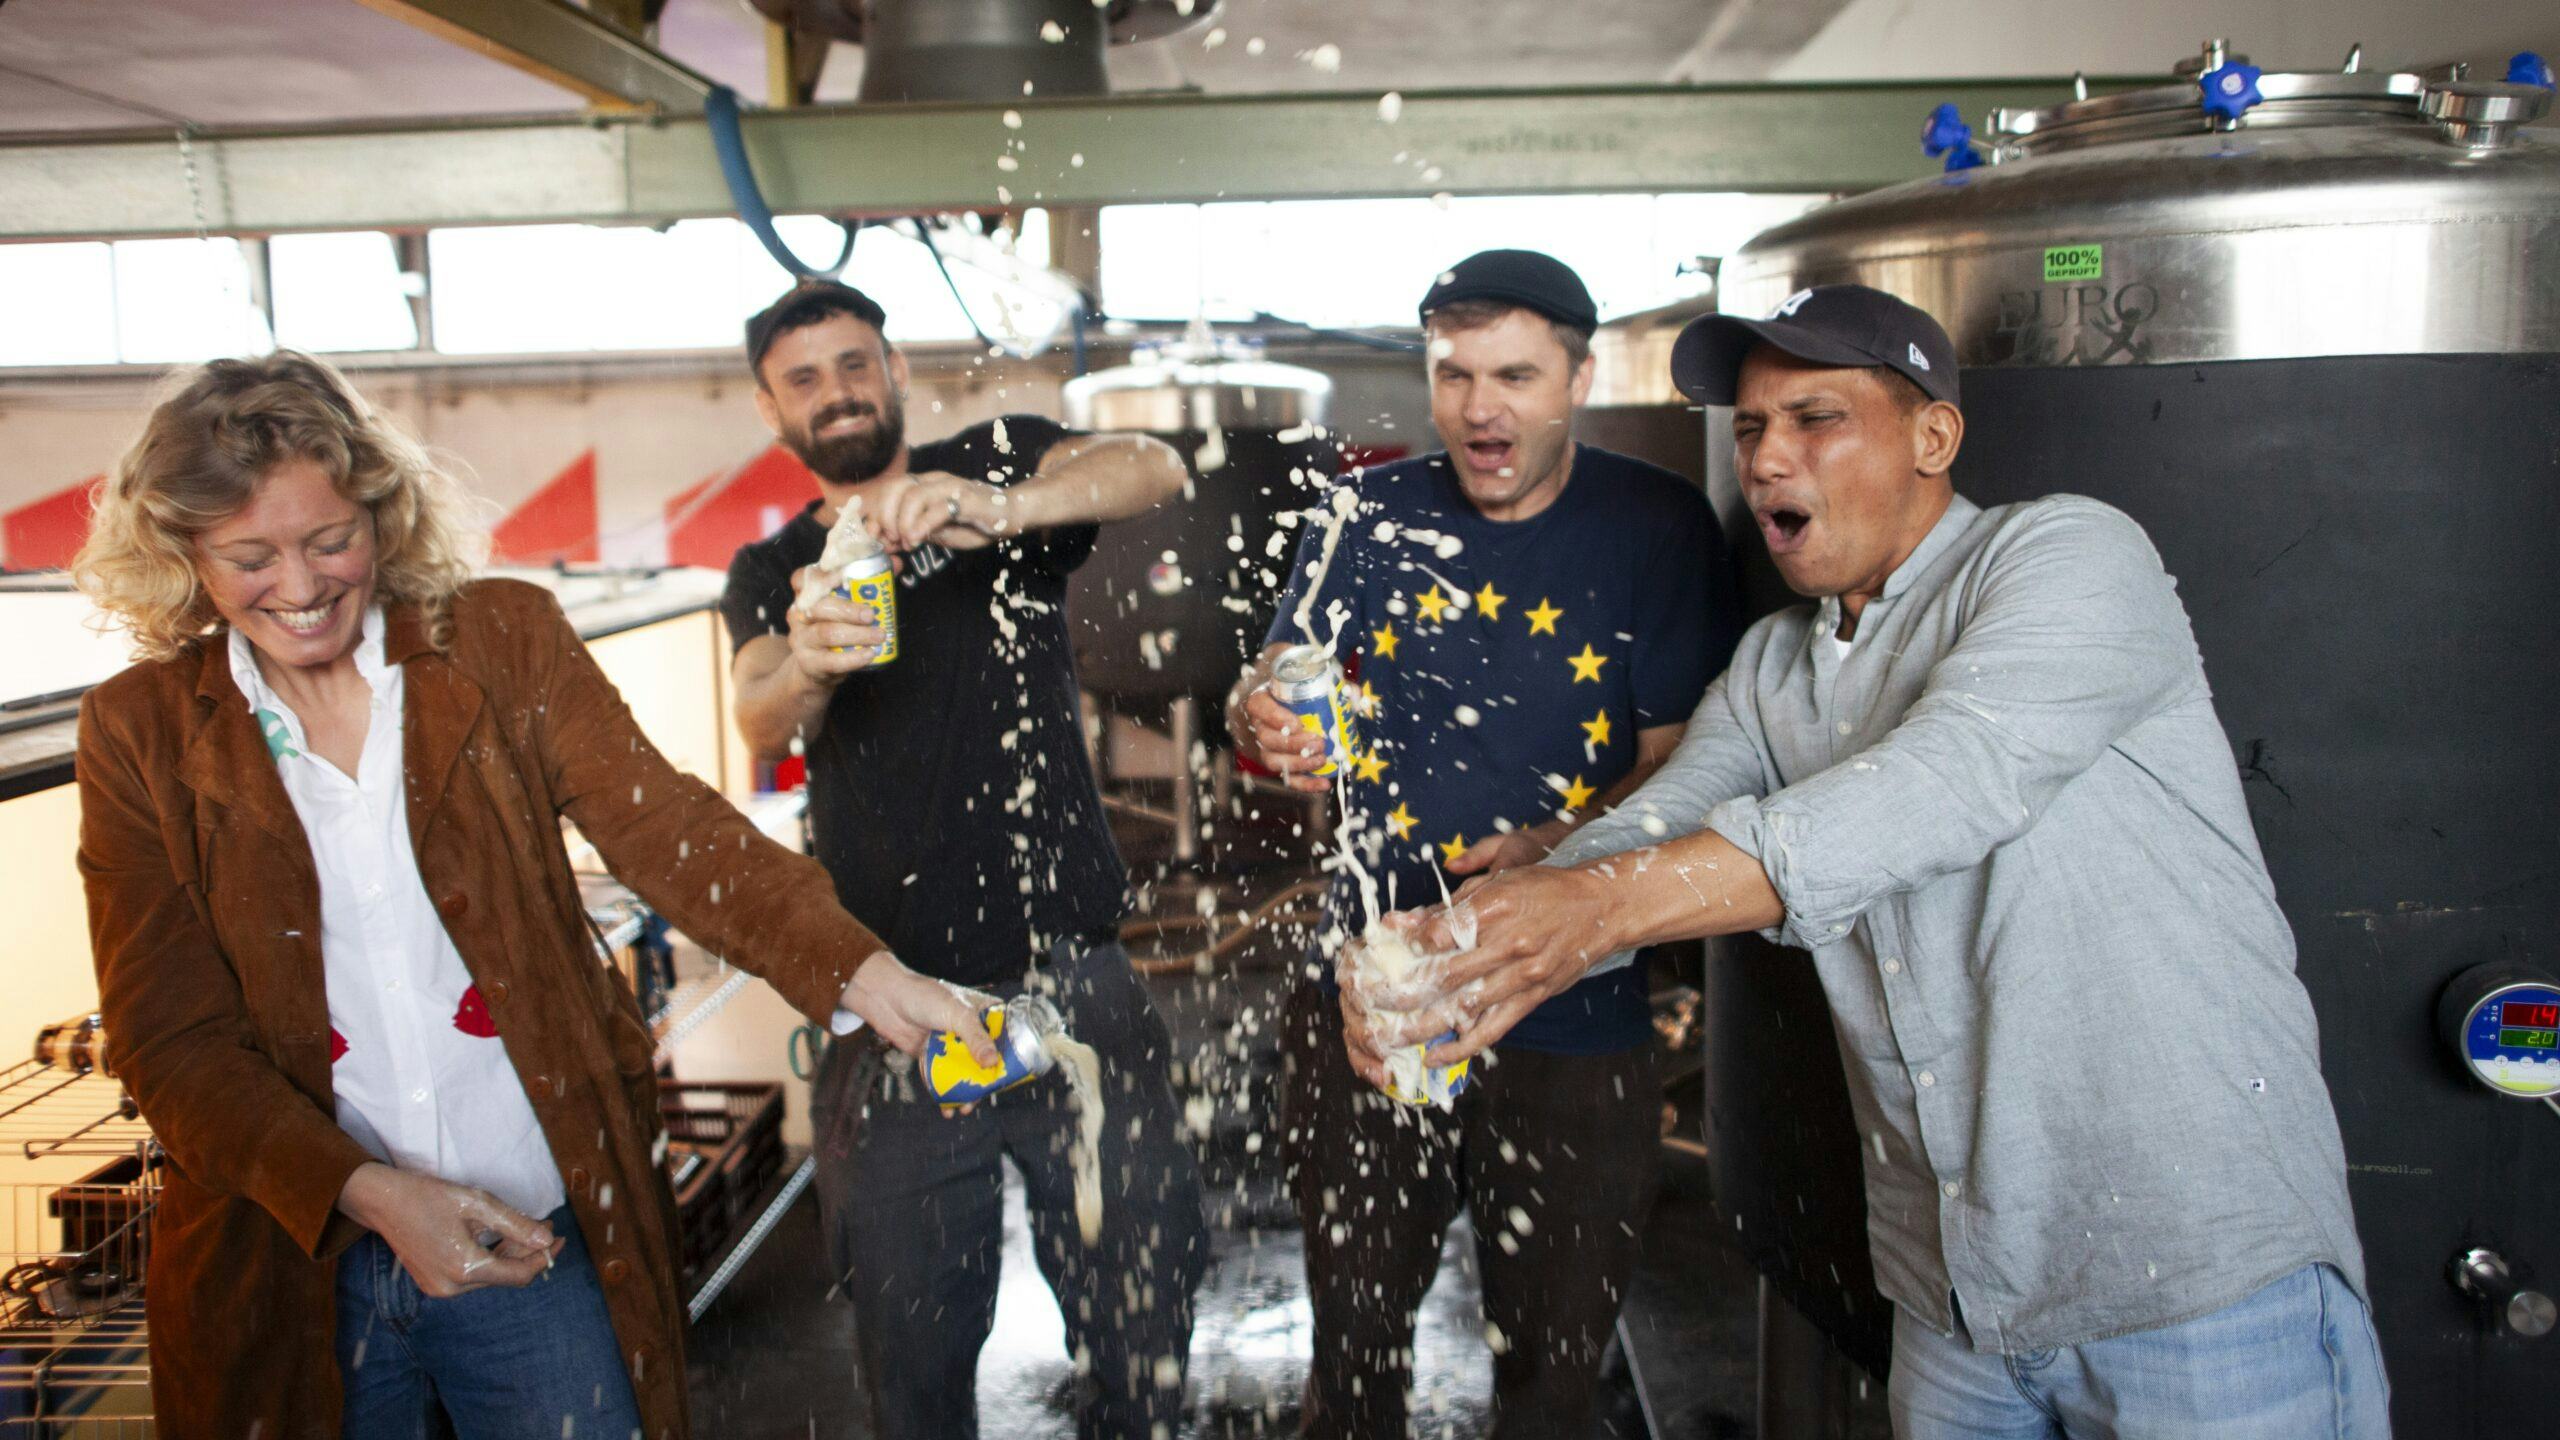 Eurobrouwers opent bierbrouwerij & pilshuis waar gegeten en gedronken kan worden